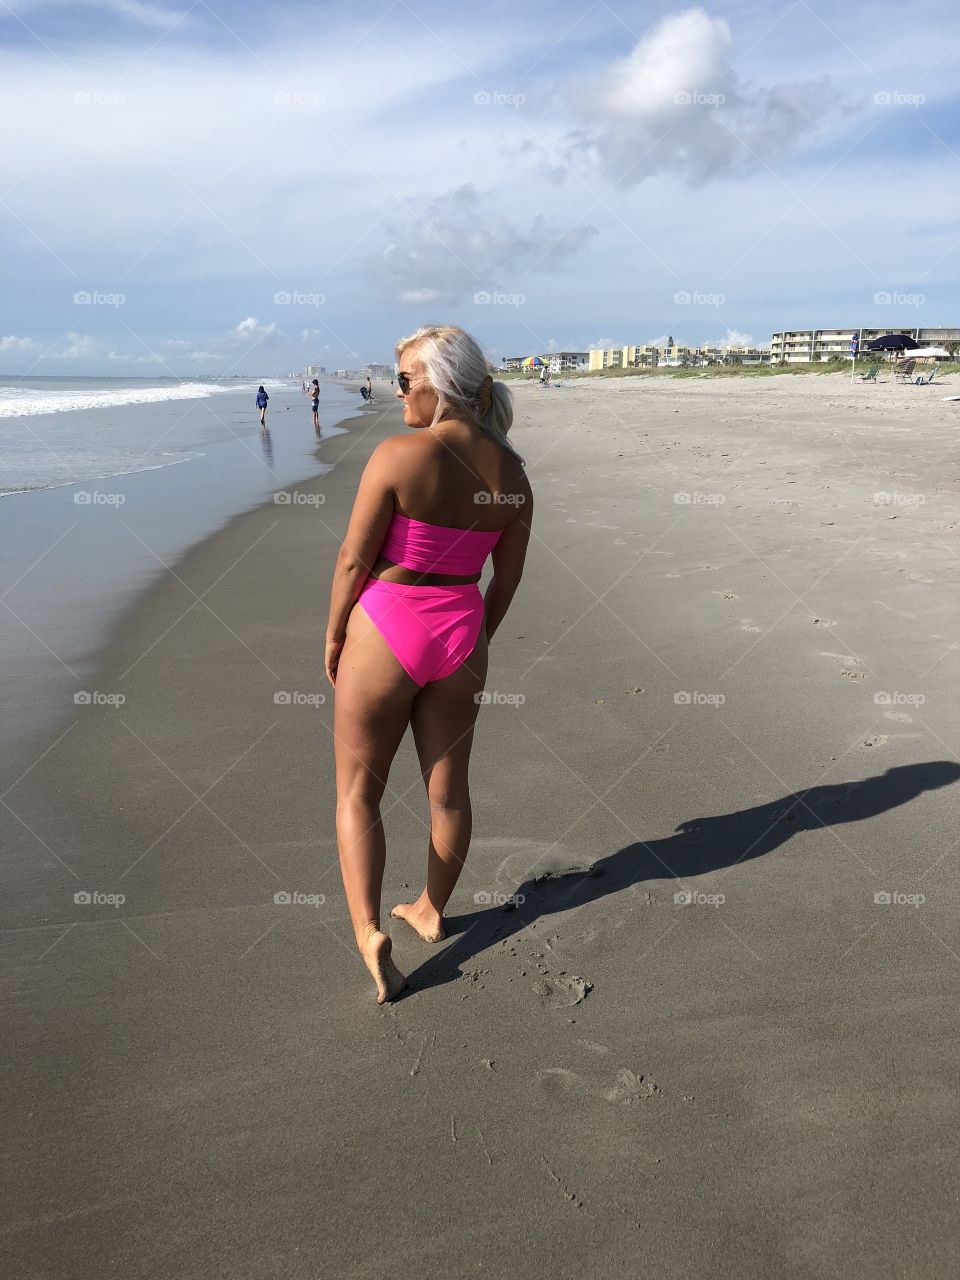 Hot pink bikini beach girl soaking up some Florida sunshine.